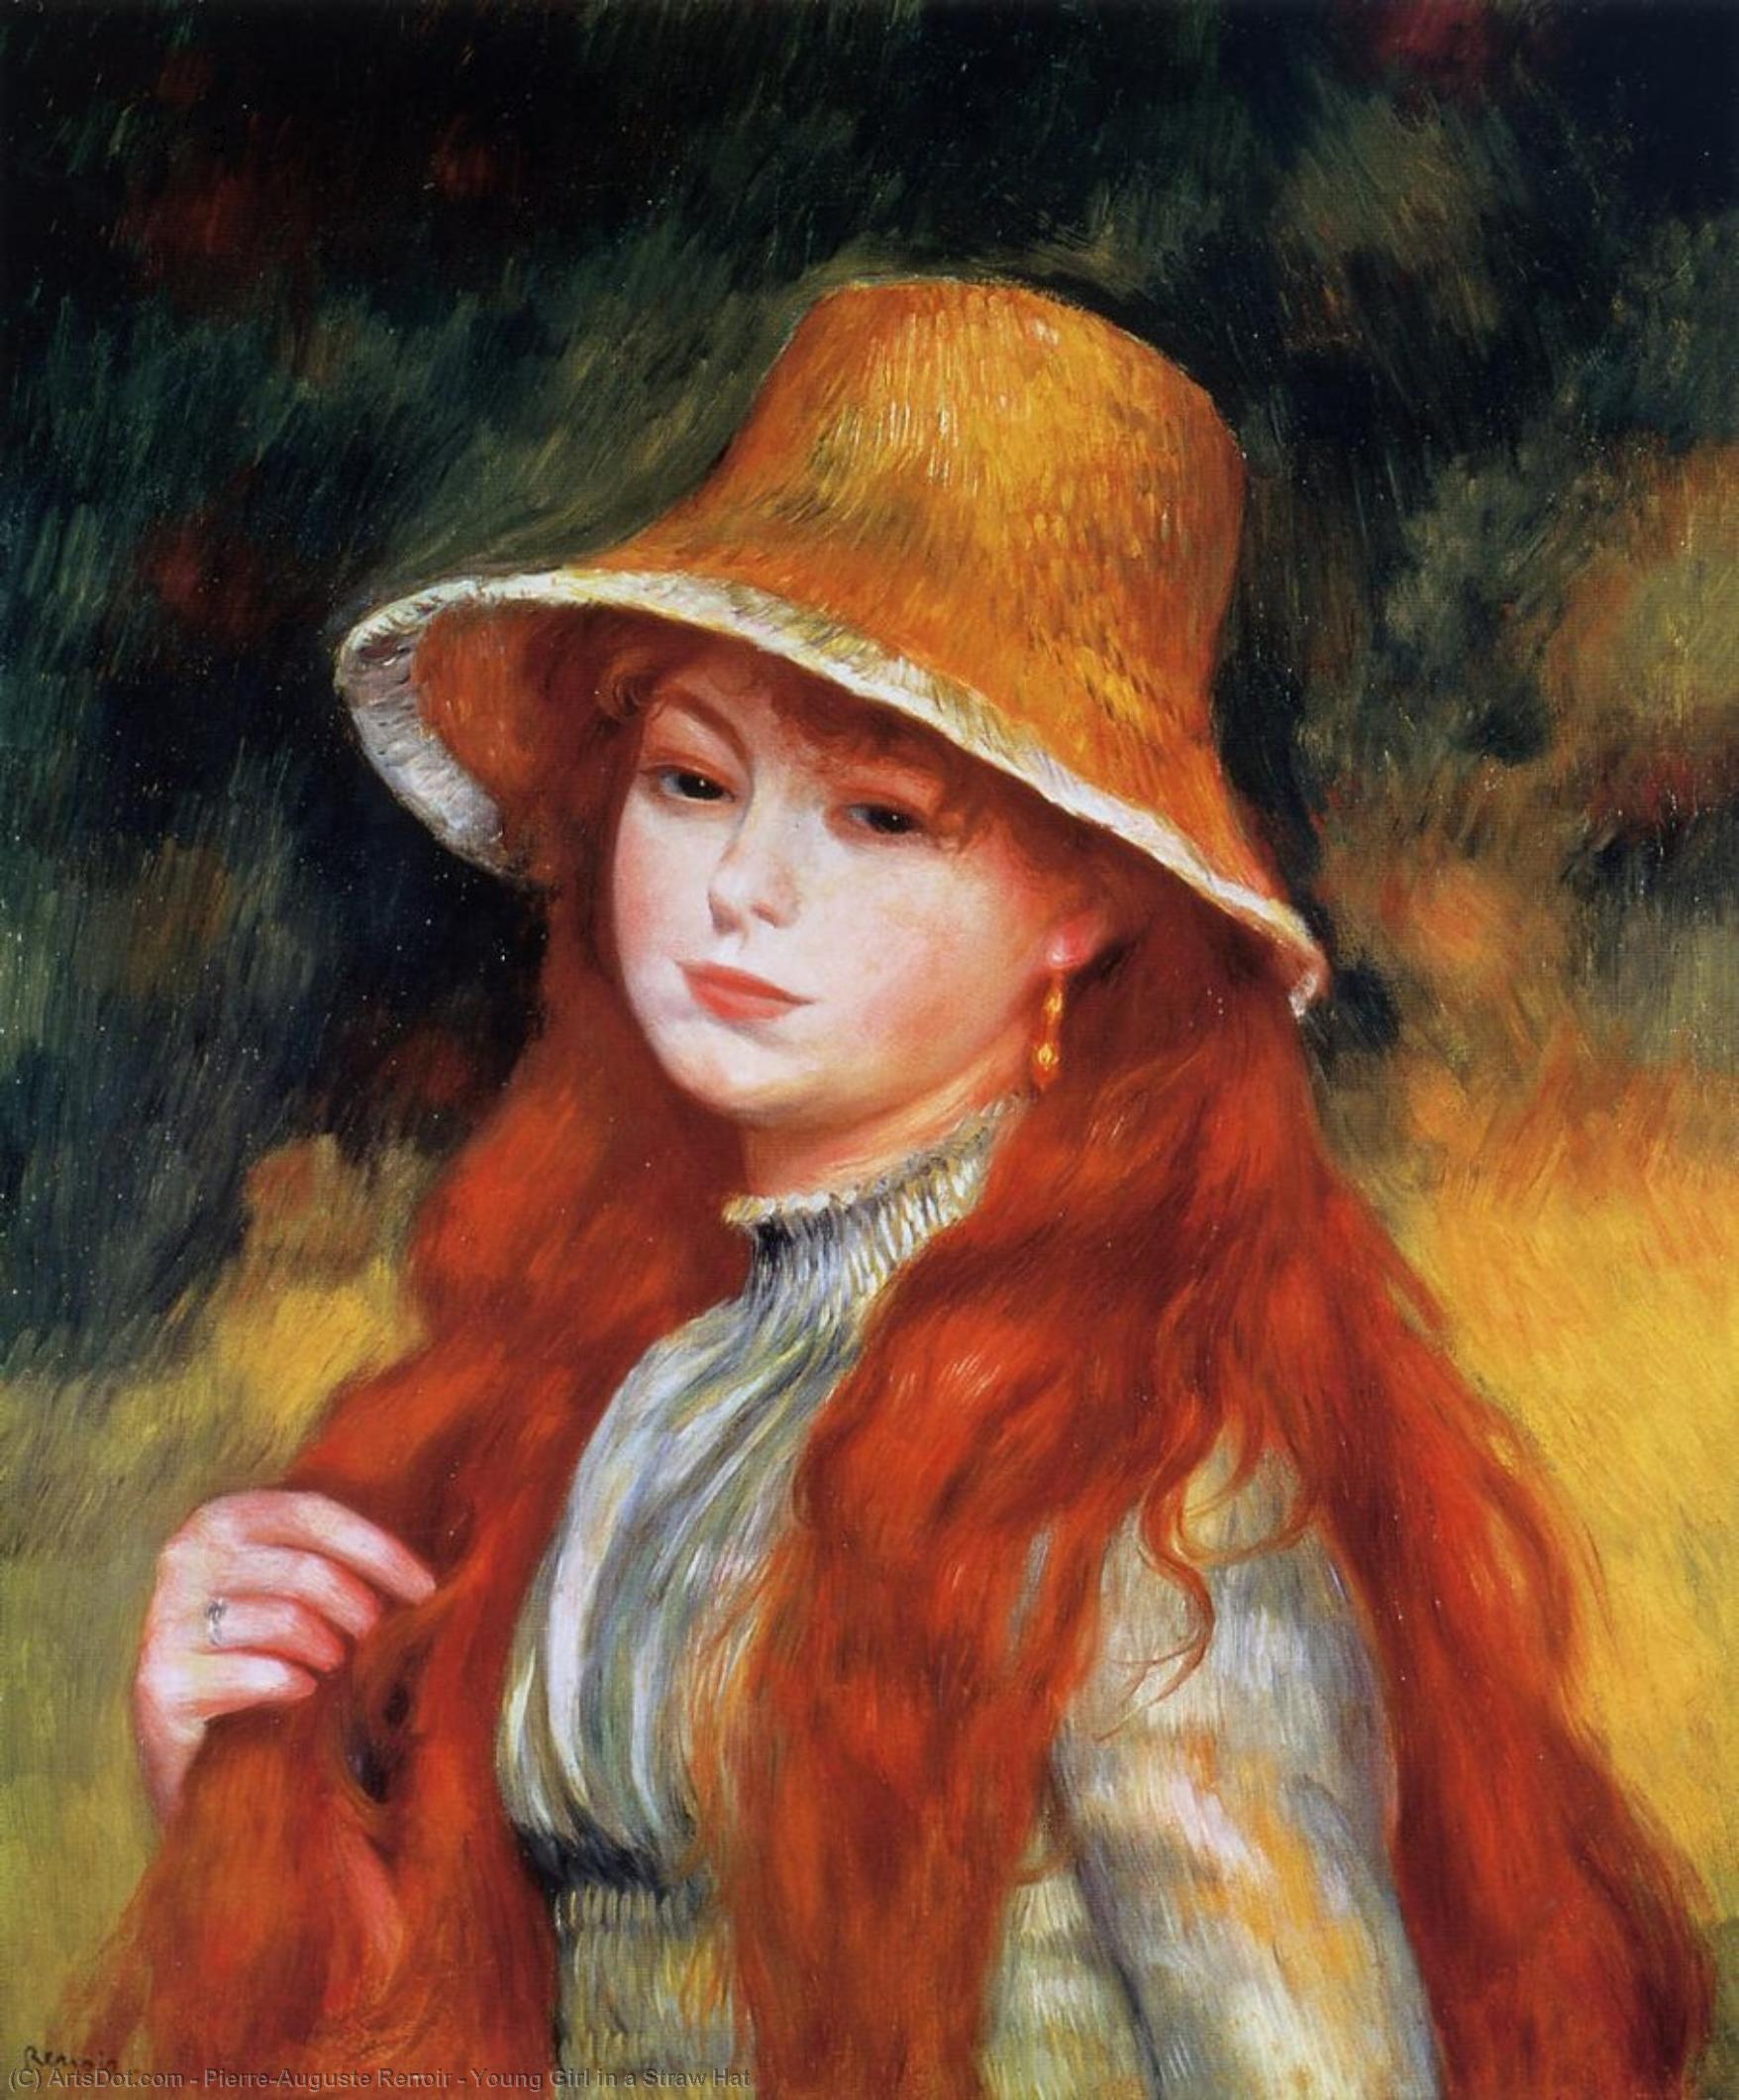 WikiOO.org - Энциклопедия изобразительного искусства - Живопись, Картины  Pierre-Auguste Renoir - Молодая девушка в     солома  шляпа